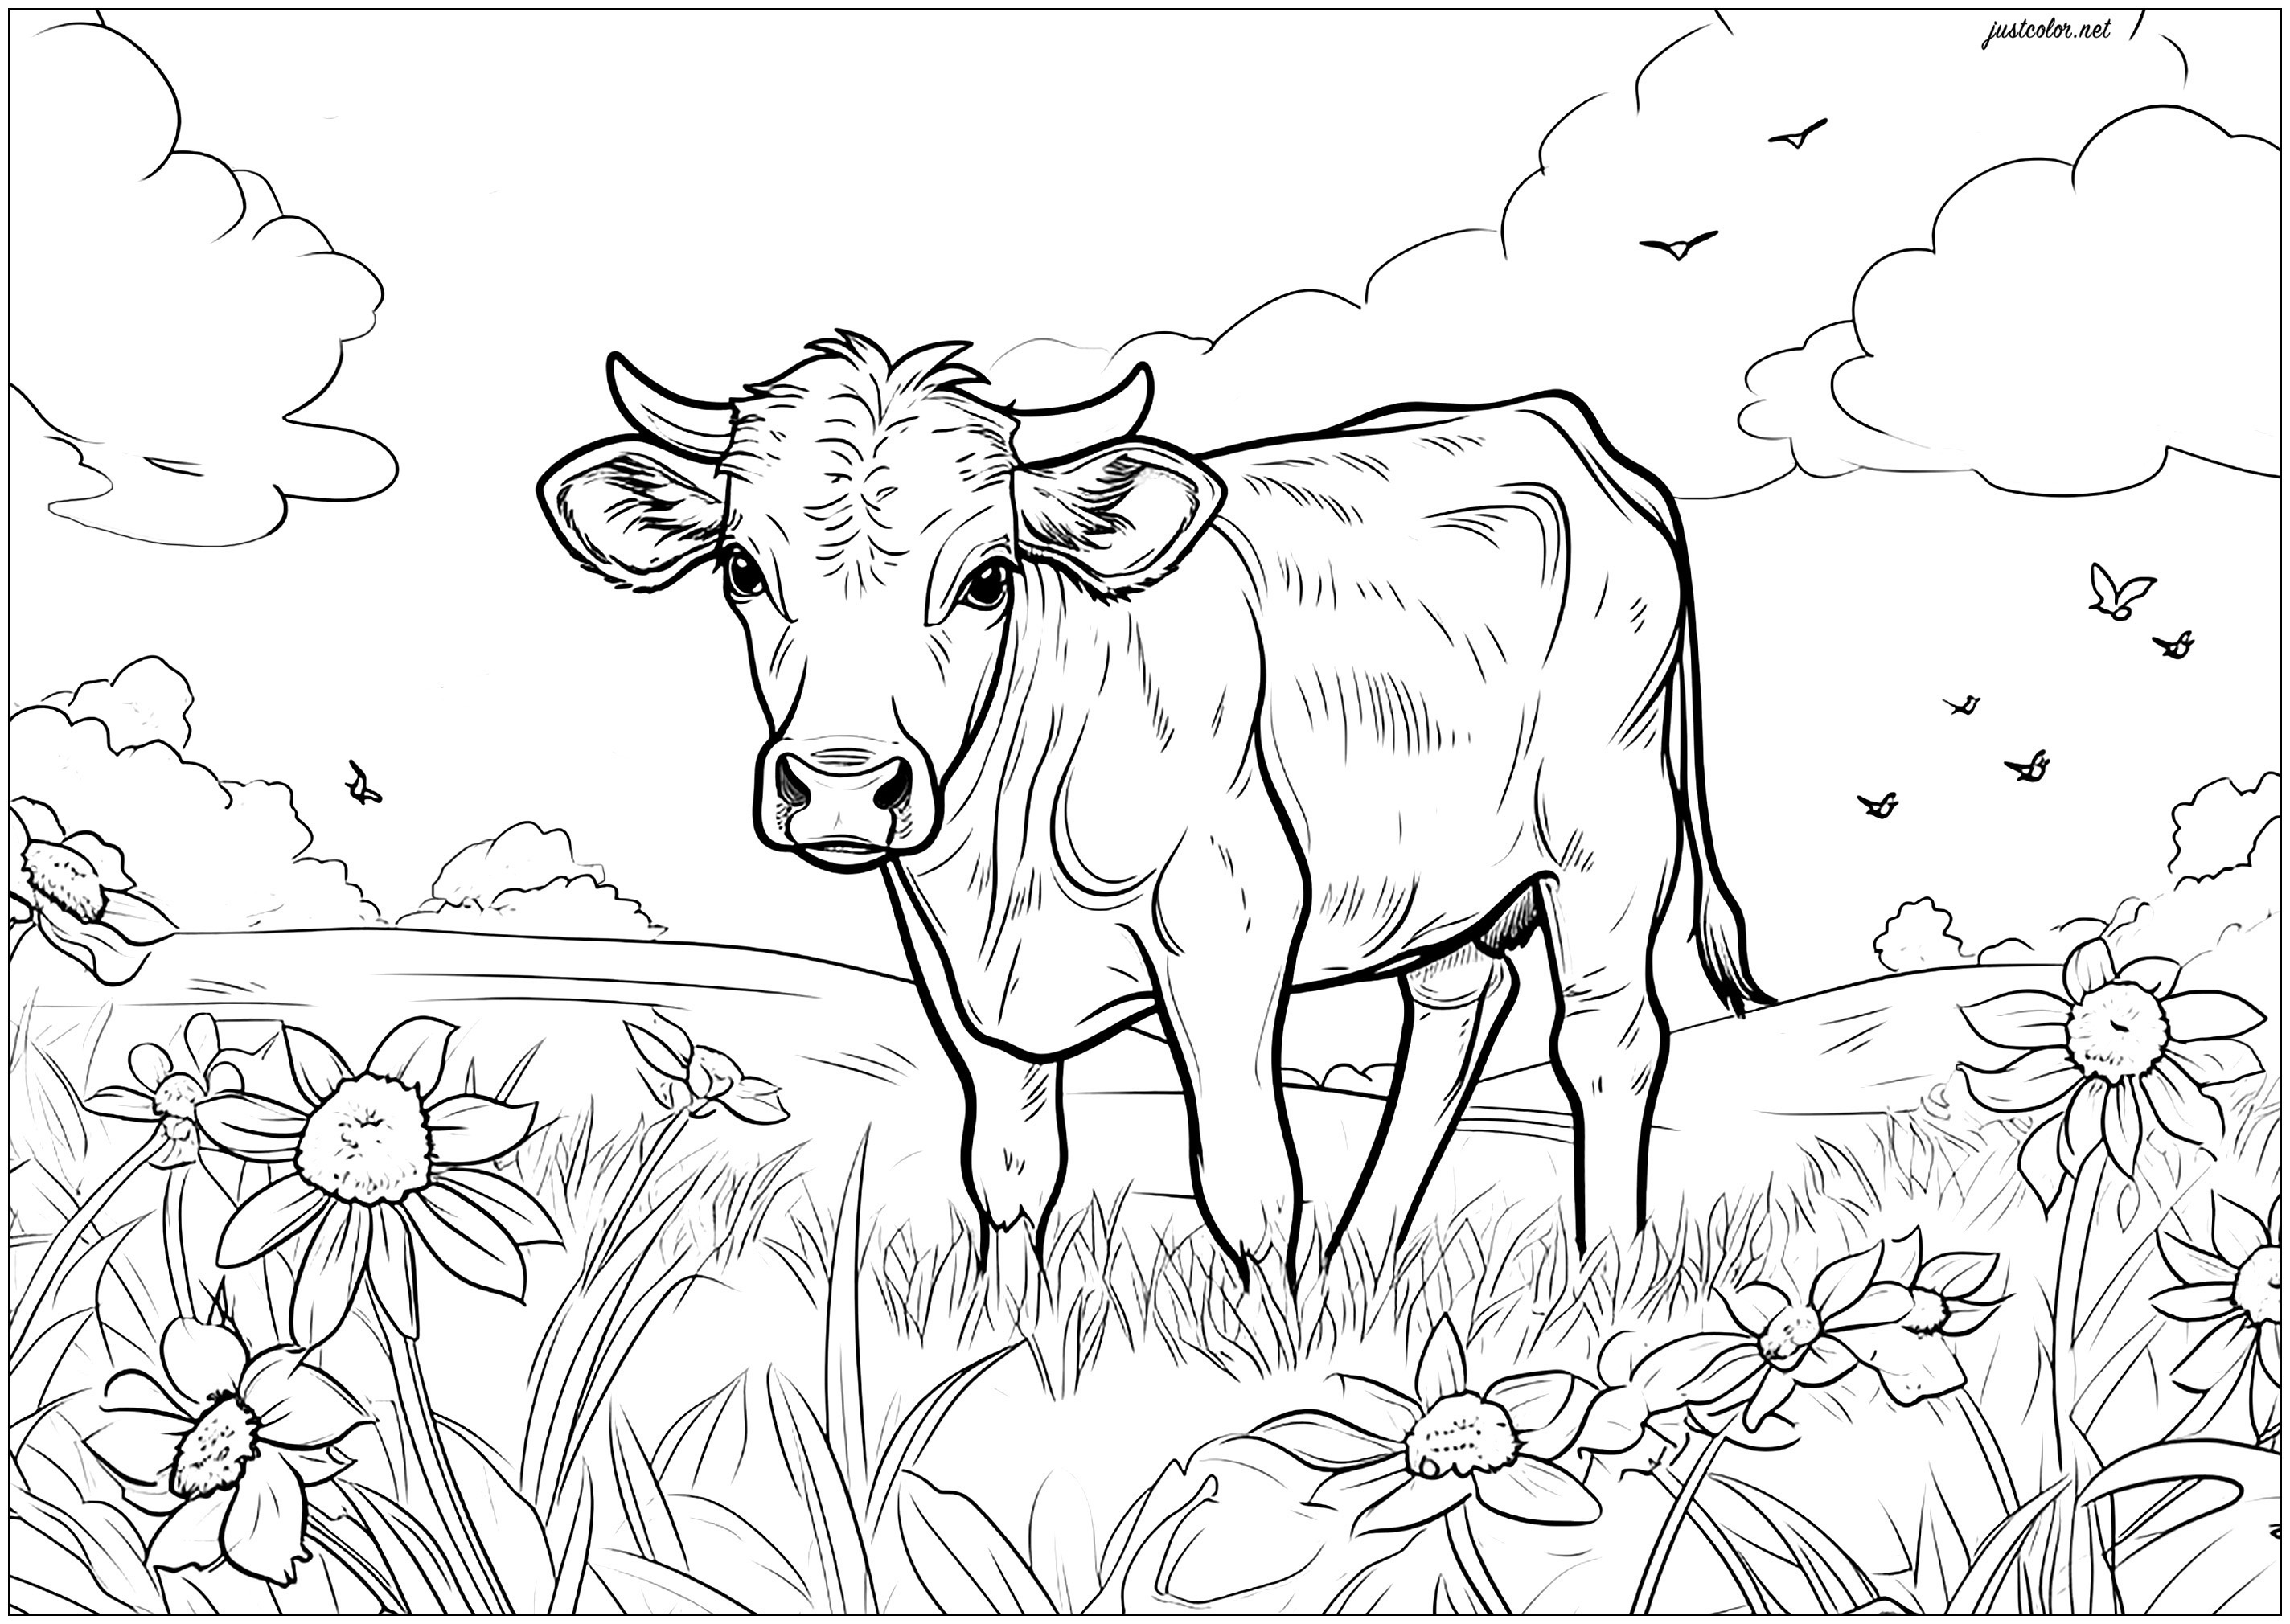 Cow in a field - 5